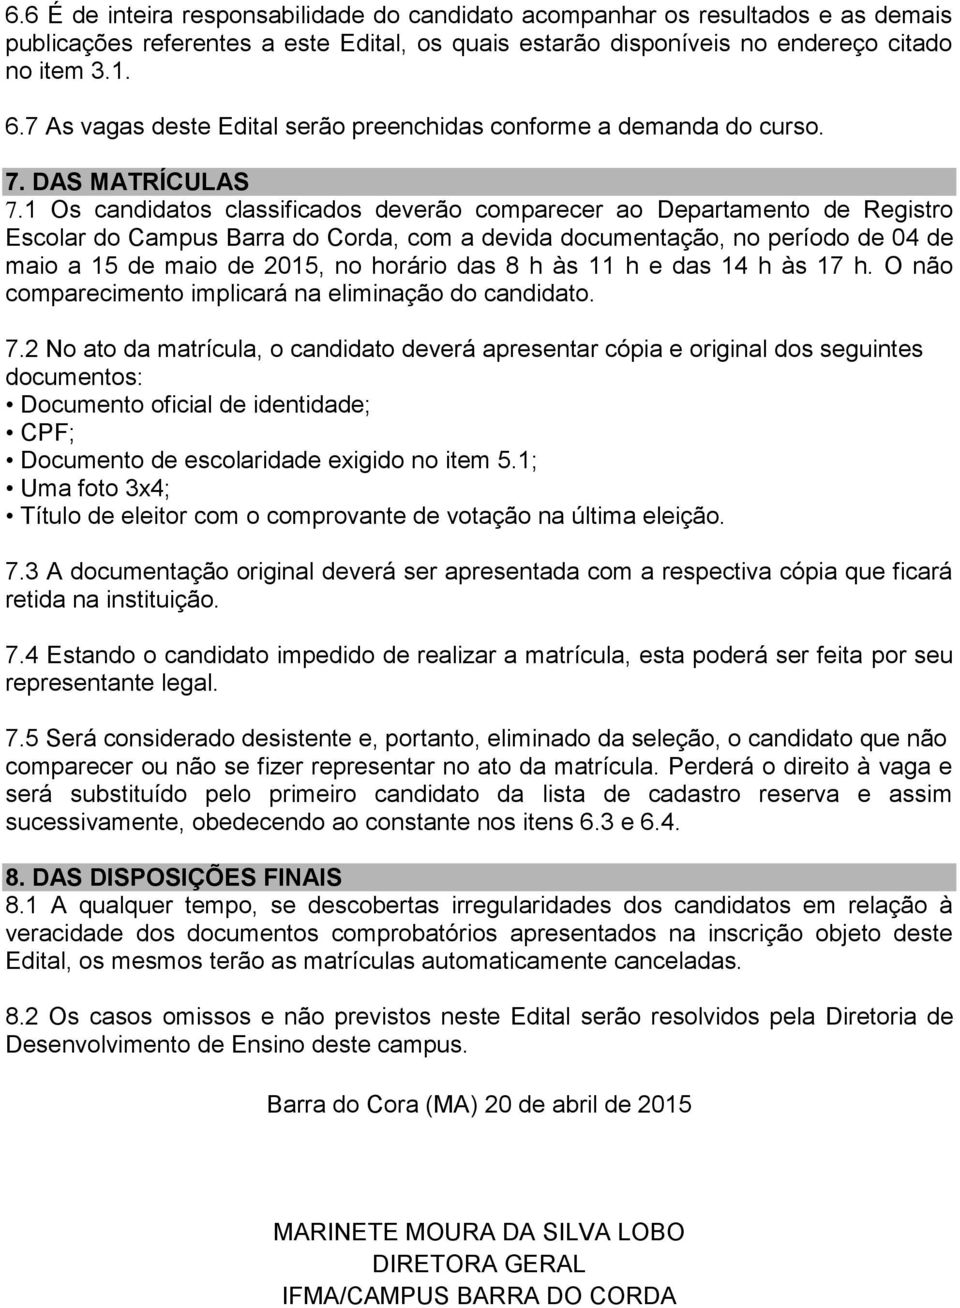 1 Os candidatos classificados deverão comparecer ao Departamento de Registro Escolar do Campus Barra do Corda, com a devida documentação, no período de 04 de maio a 15 de maio de 2015, no horário das